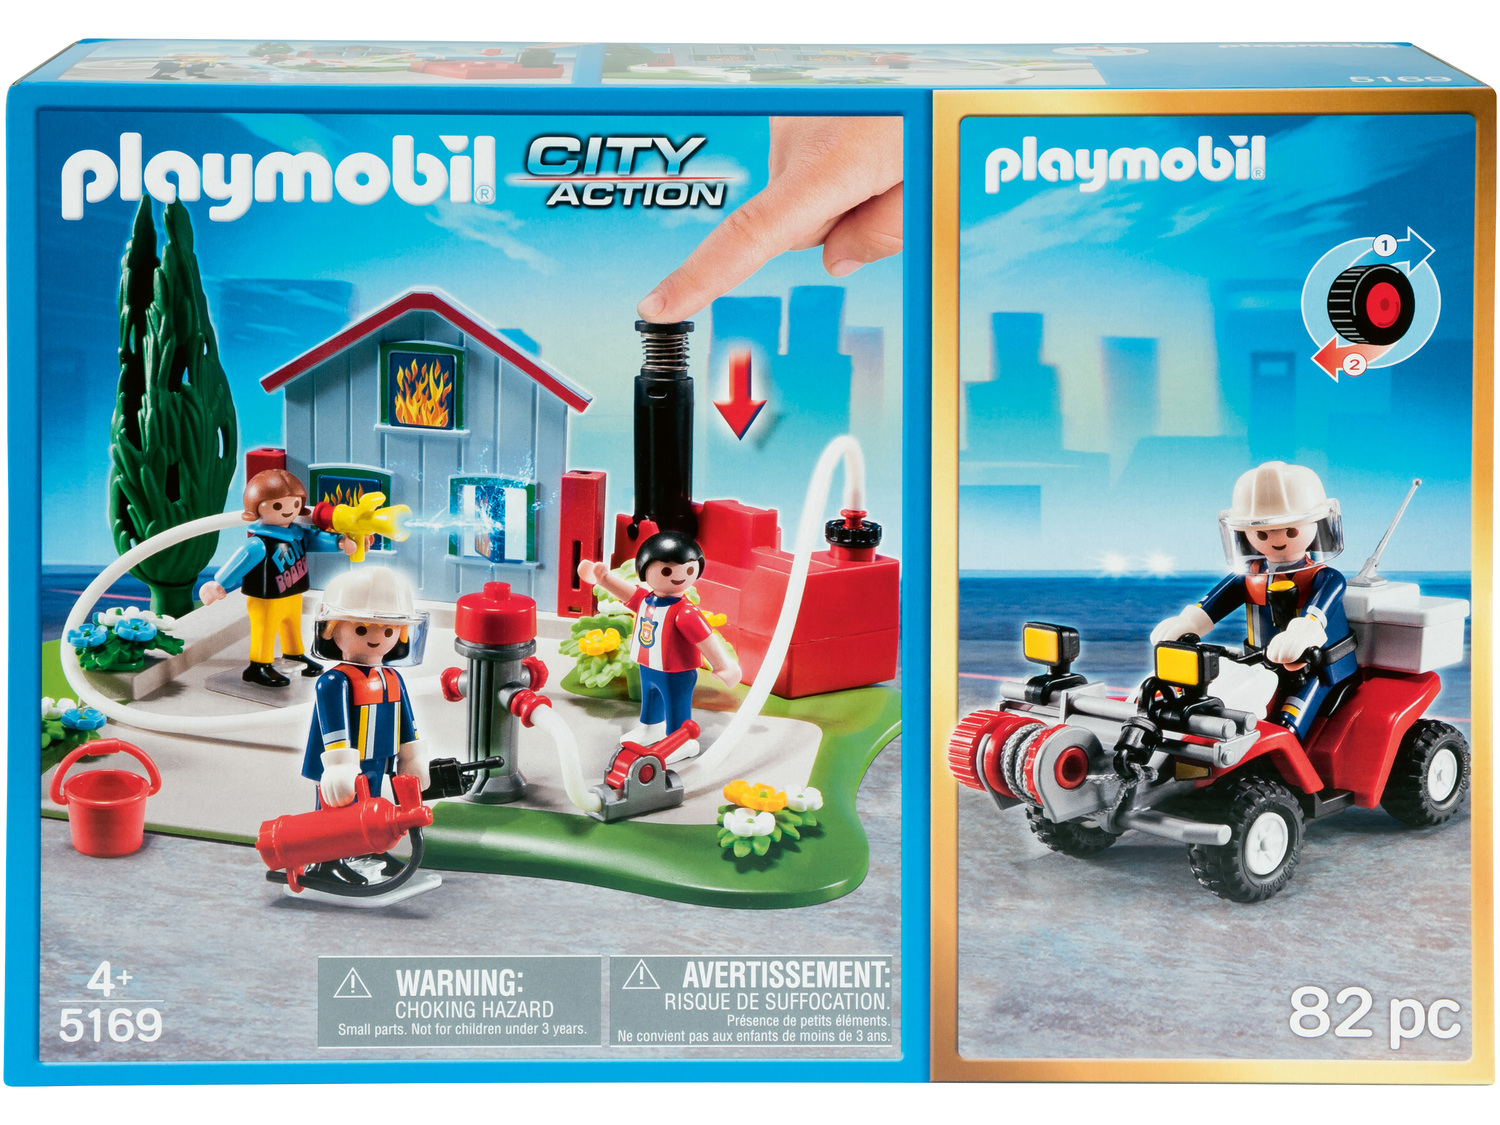 Zestaw klocków z figurkami Playmobil, cena 69,90 PLN  
4 zestawy do wyboru
Opis